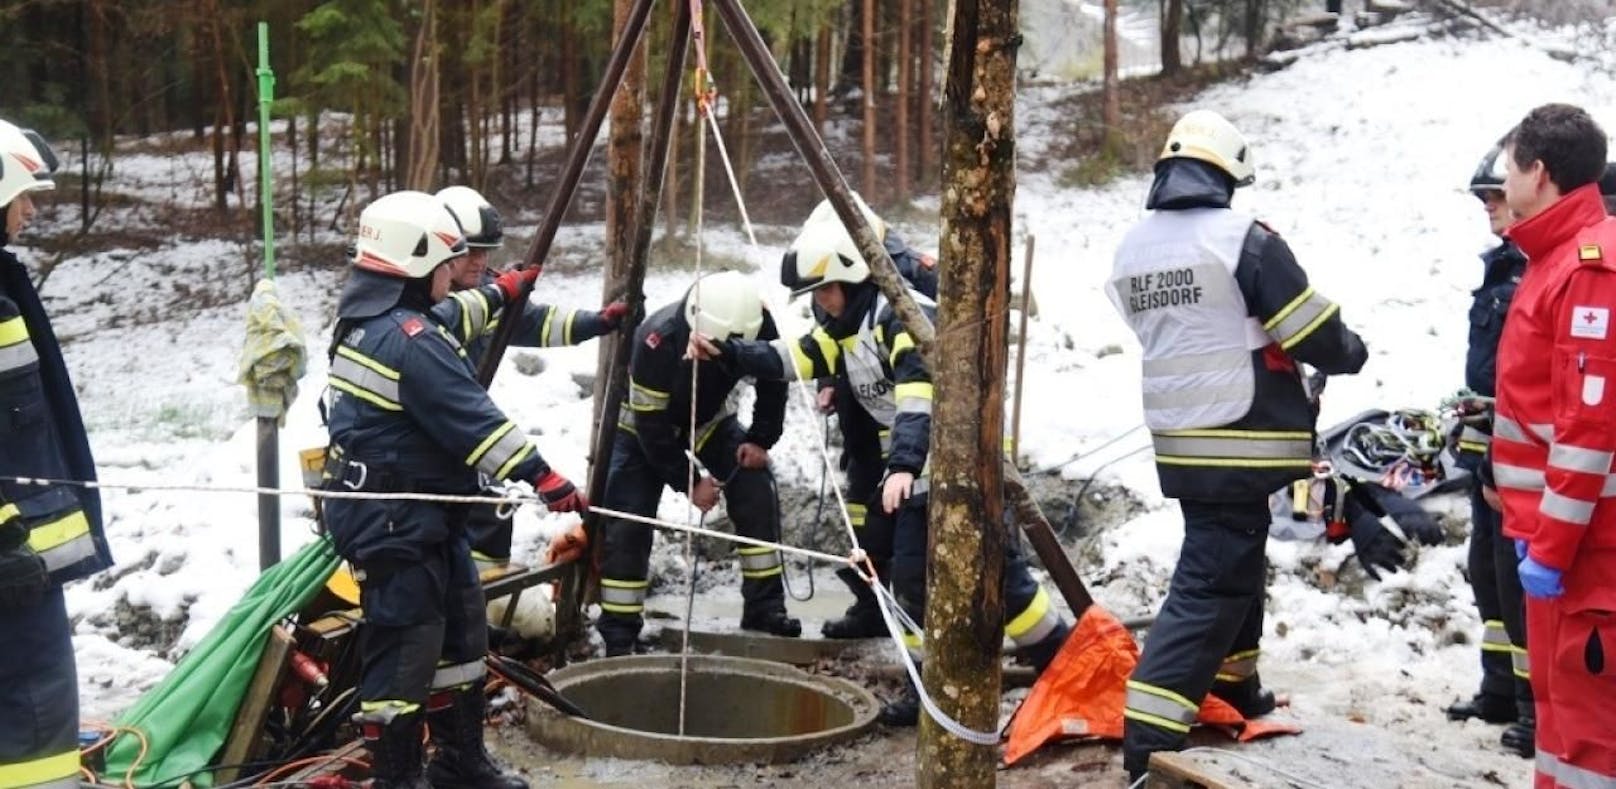 Mann stirbt bei Sturz in 30 Meter tiefen Brunnen